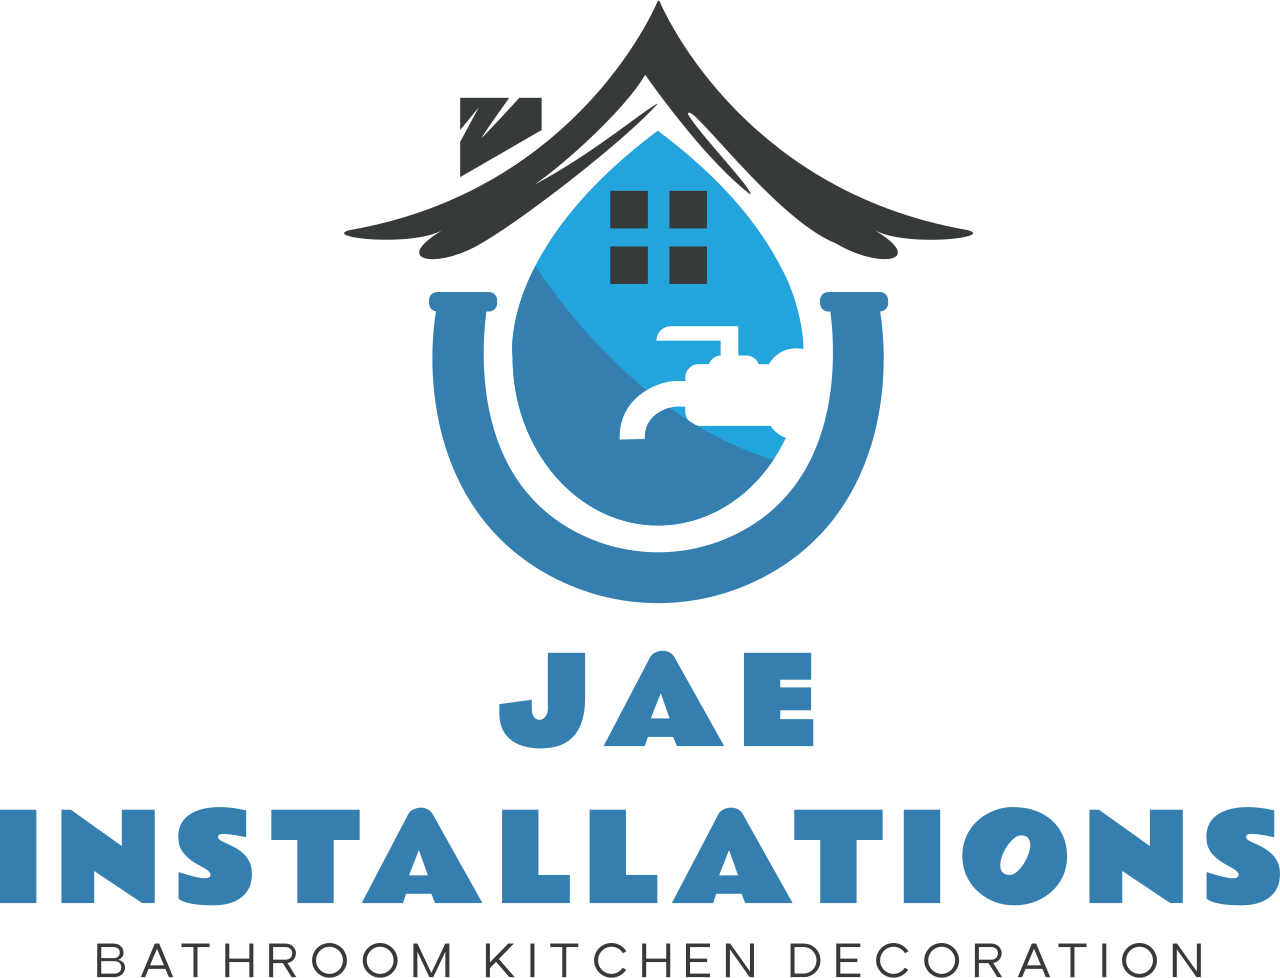 JAE
Installations 's logo